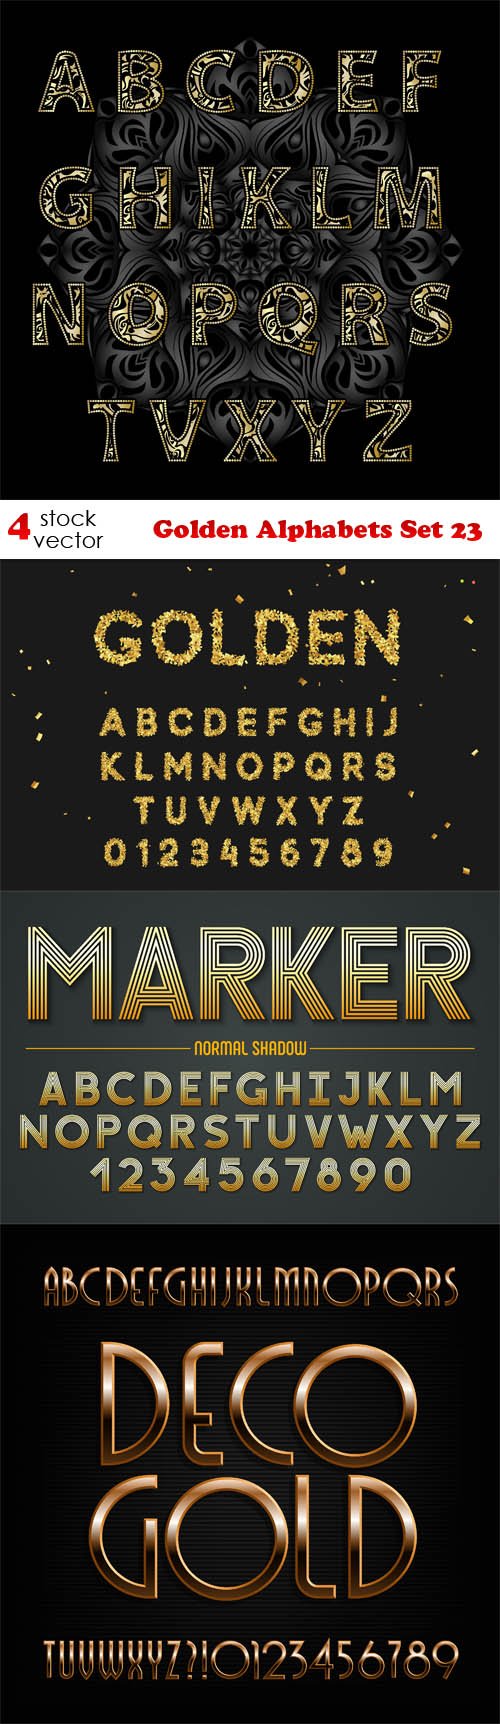 Vectors - Golden Alphabets Set 23